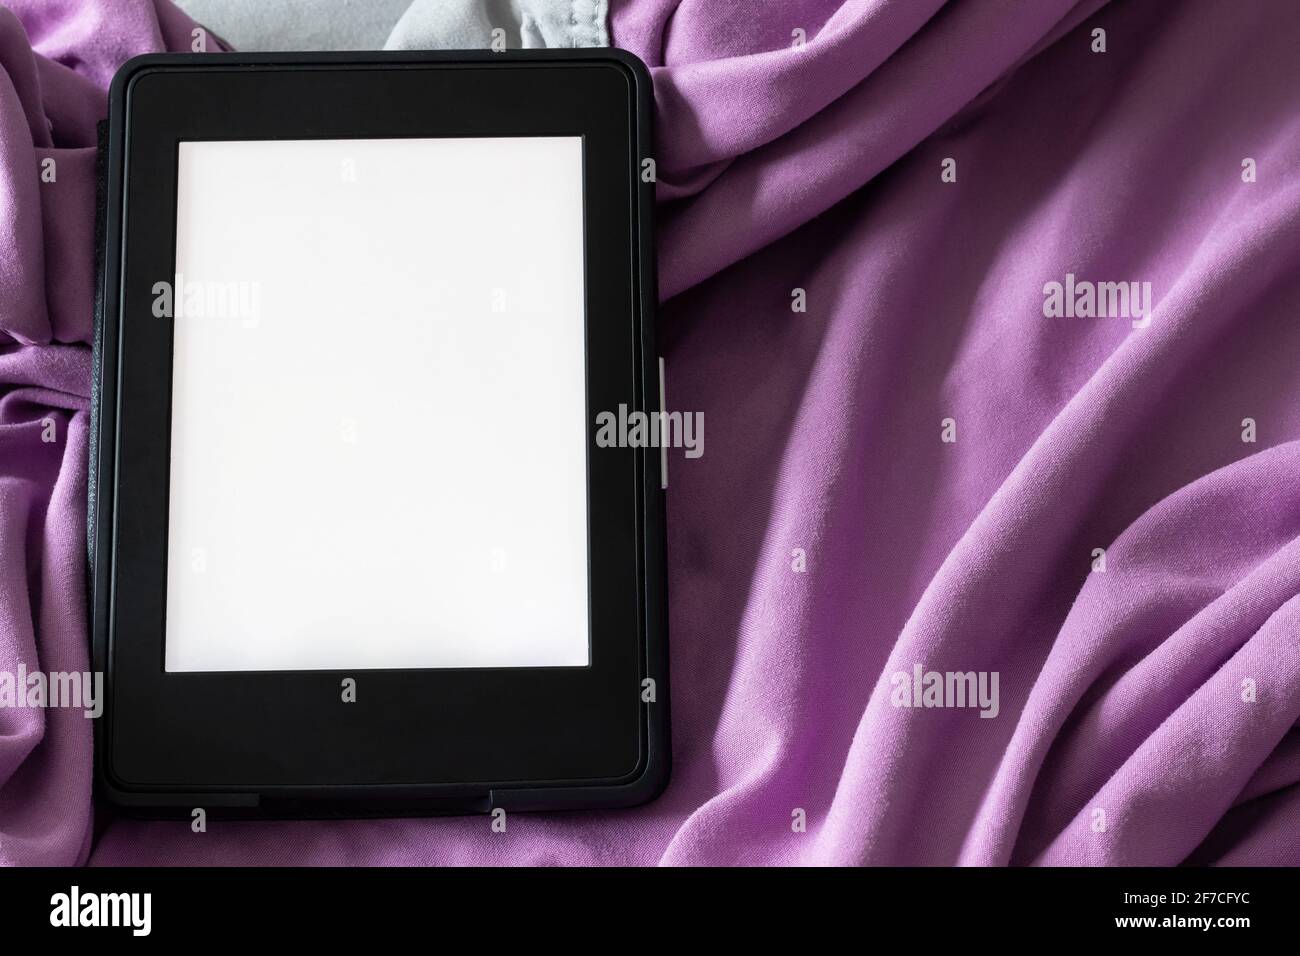 Ein modernes elektronisches E-Reader mit einem leeren Bildschirm auf einem grauen und violetten Bett. Mockup Template Tablet auf Microfaser-Bettwäsche Nahaufnahme Stockfoto